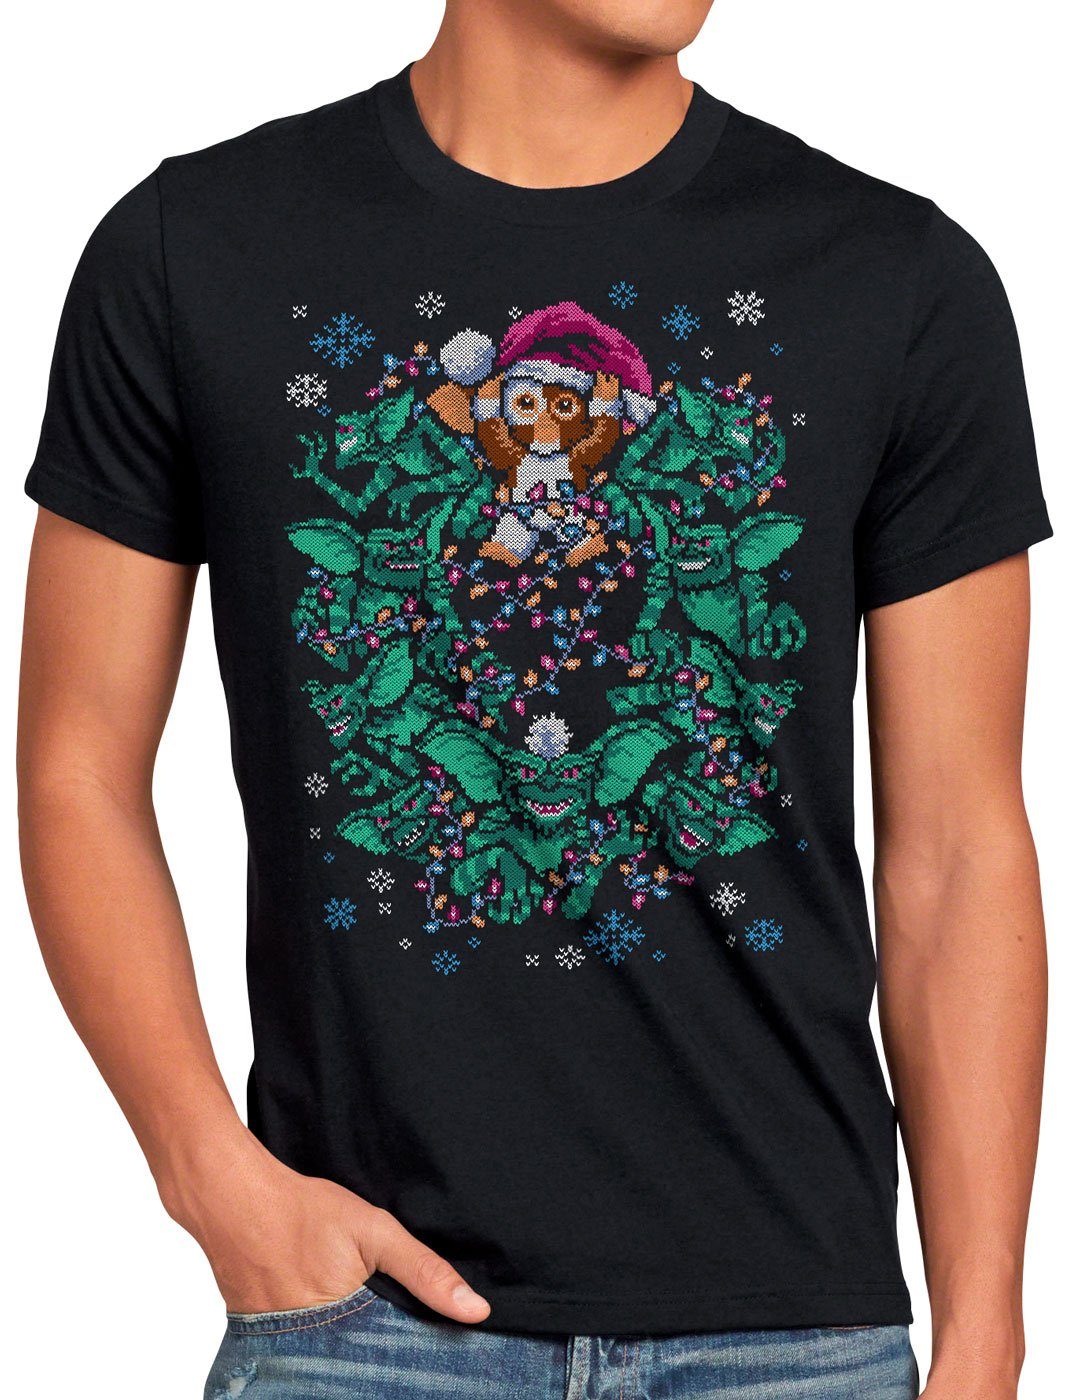 Gizmo pulli style3 sweater ugly T-Shirt weihnachten Herren strick gremlins weihnachtspullover Print-Shirt xmas